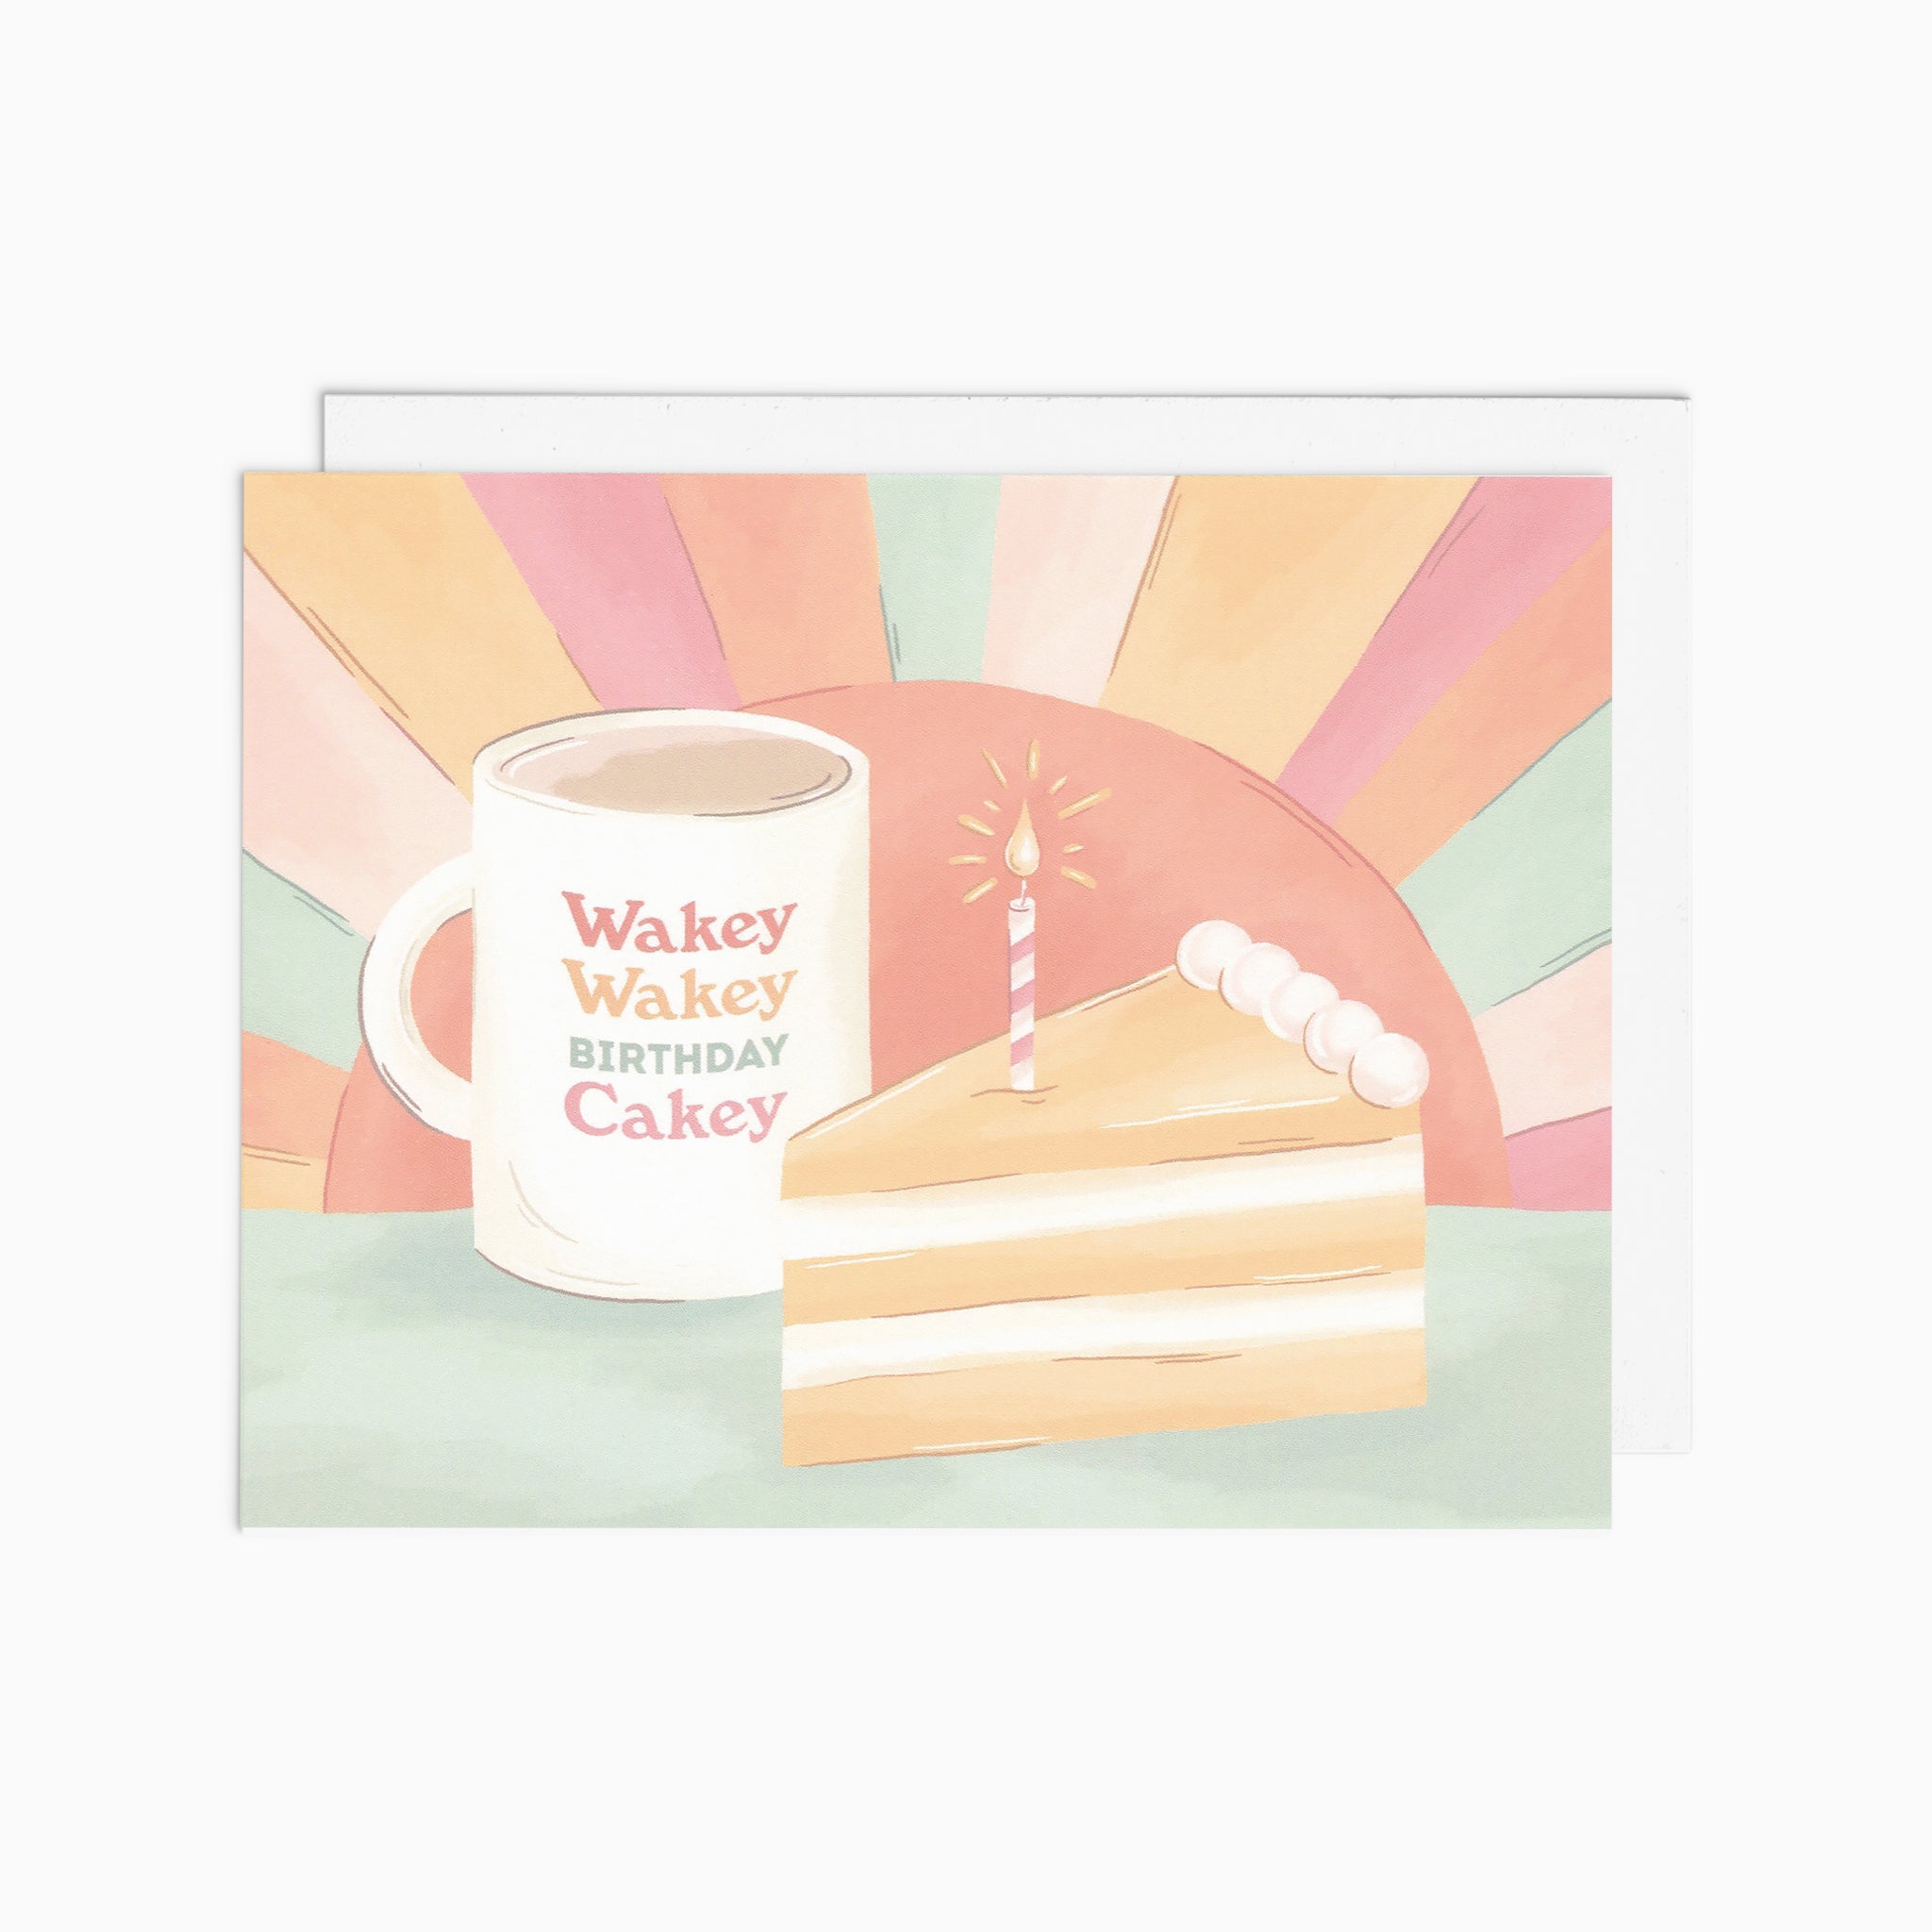 Wakey Wakey Birthday Cakey Card